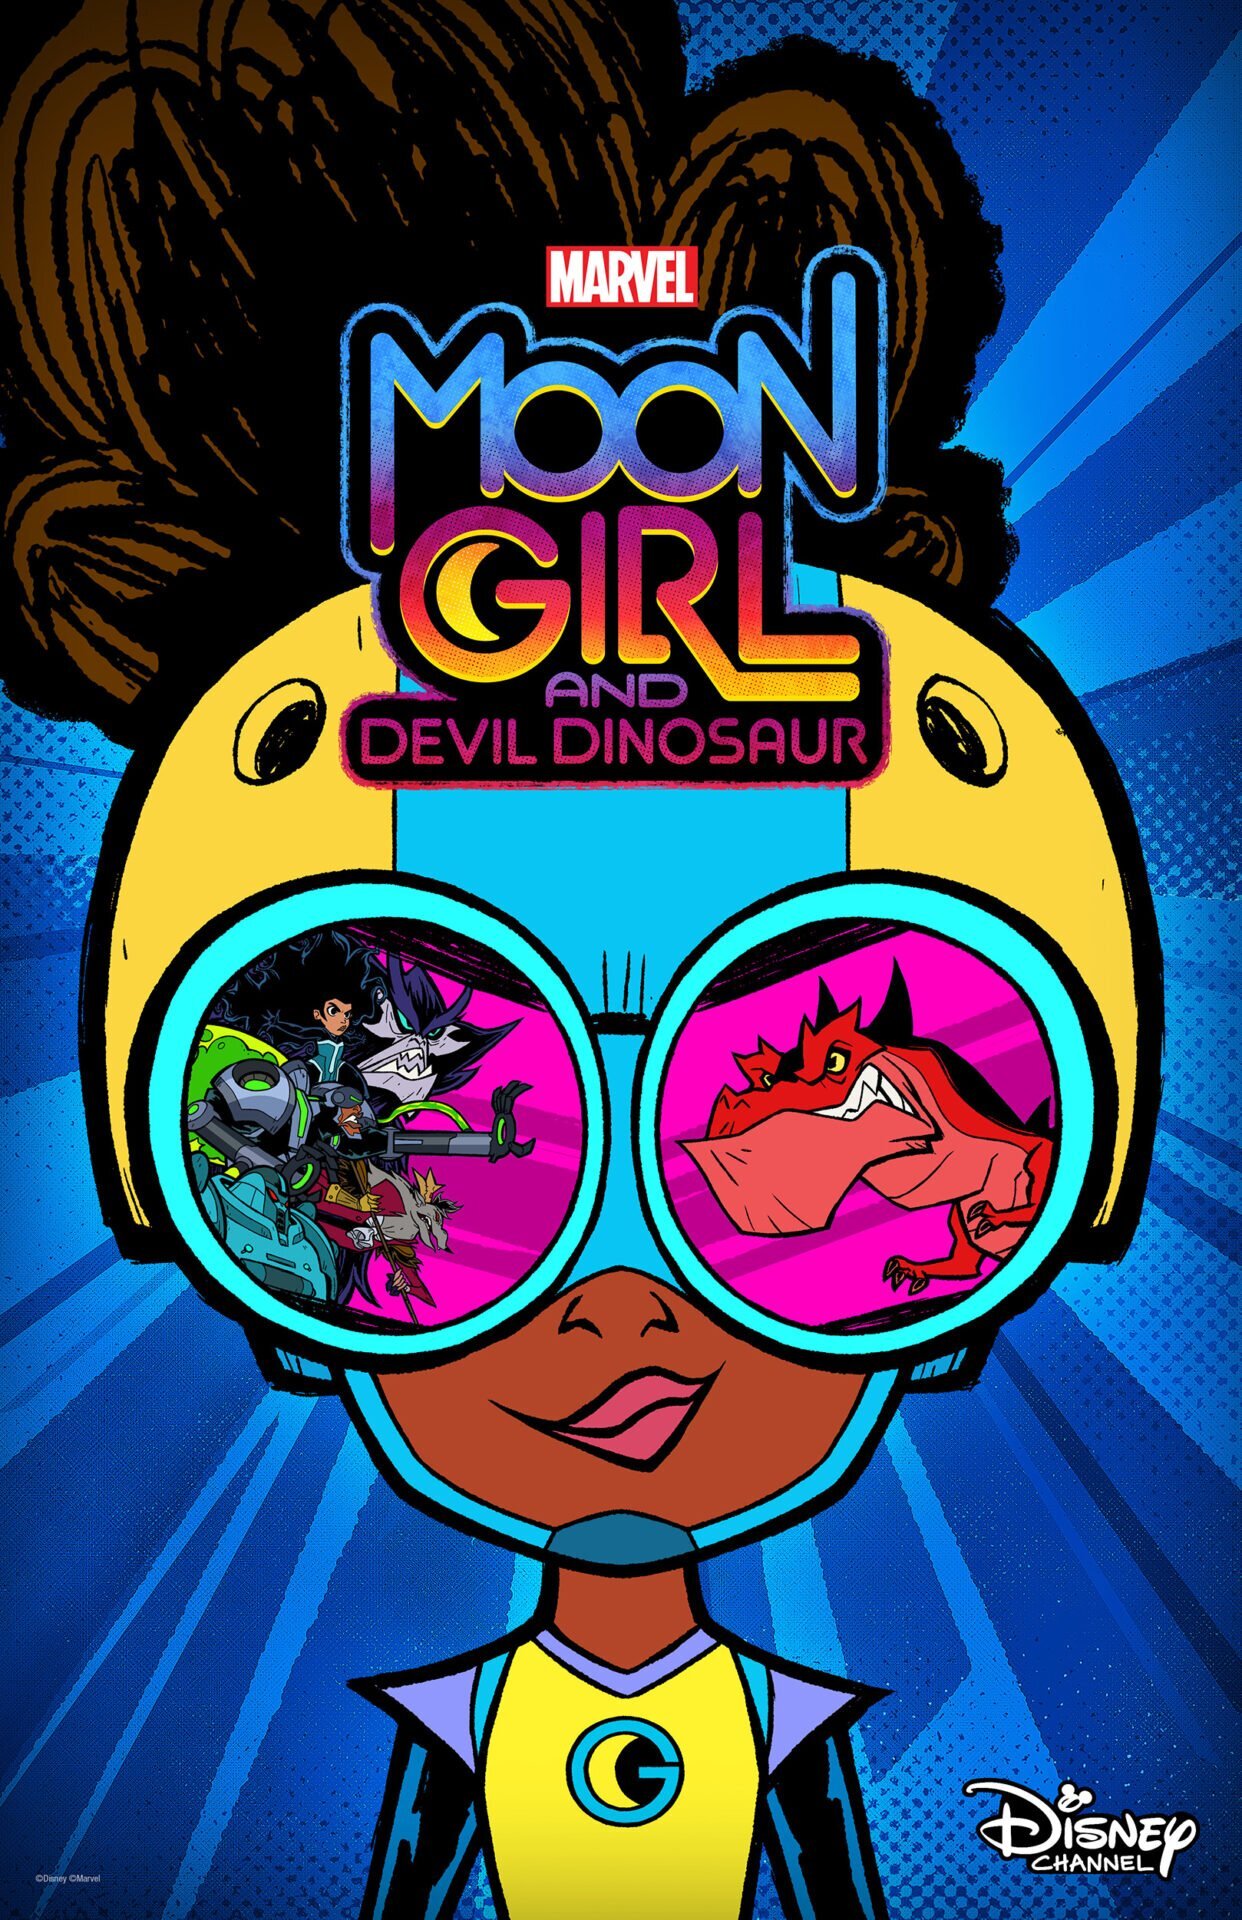 마블 문 걸 앤 데빌 다이너소어(Marvel’s Moon Girl and Devil Dinosaur)